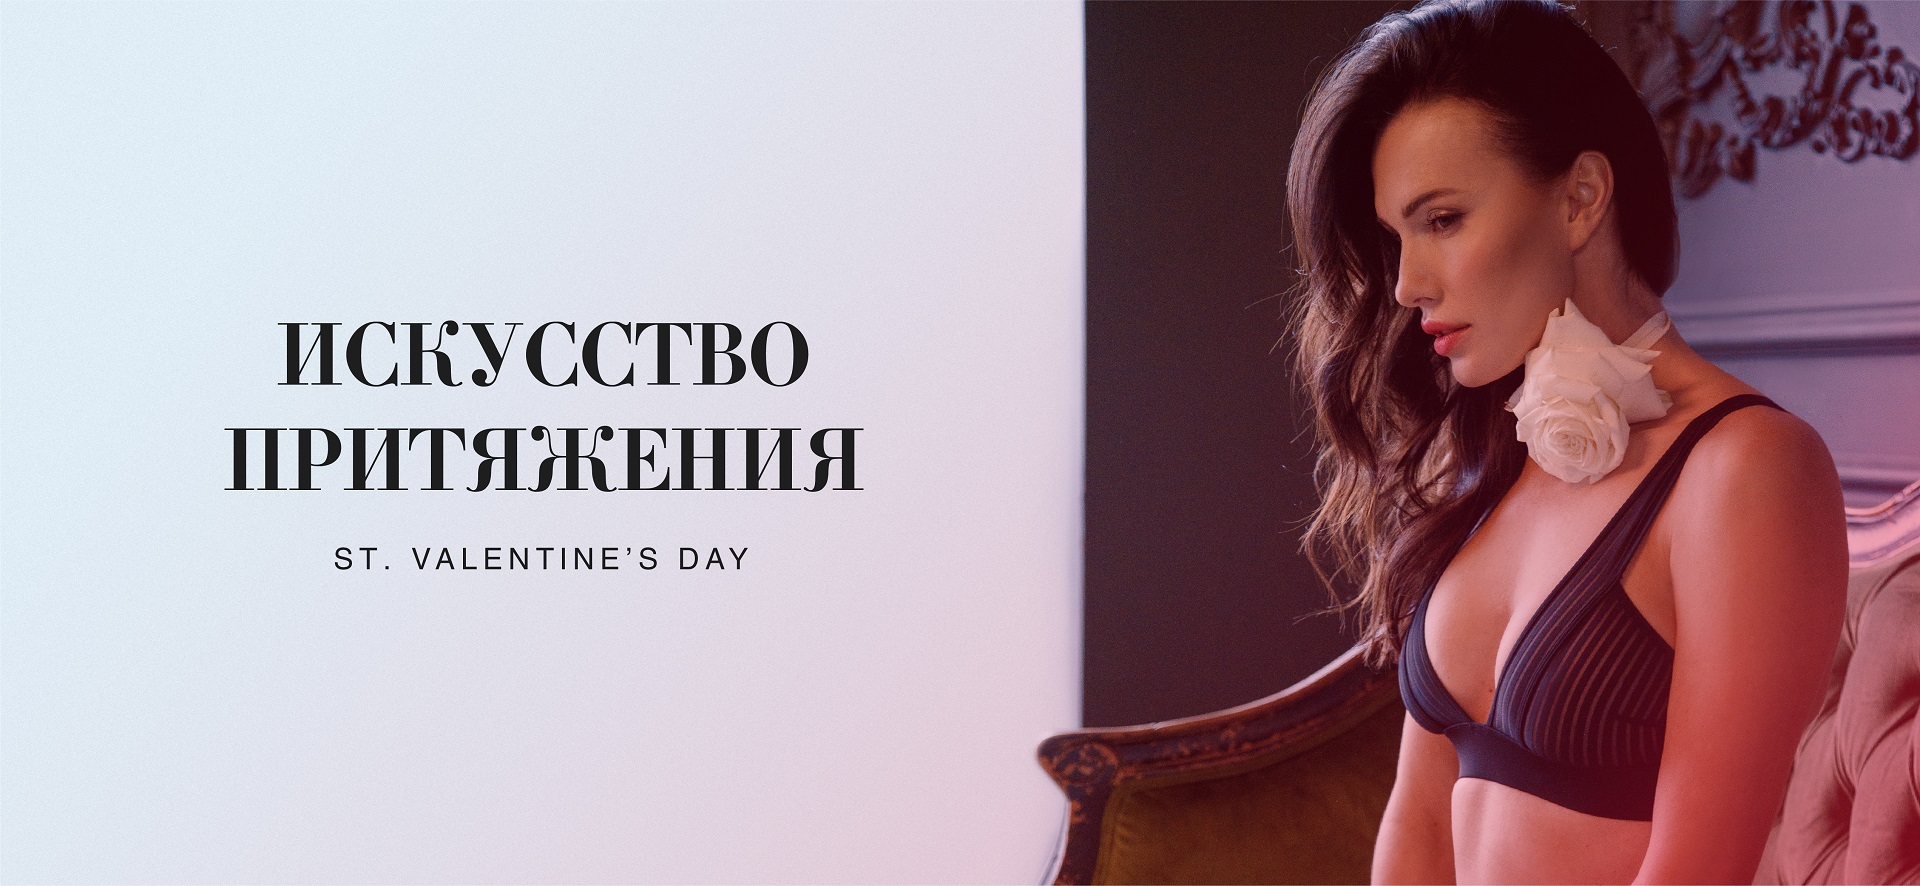 Соблазнительные коллекции на День Валентина